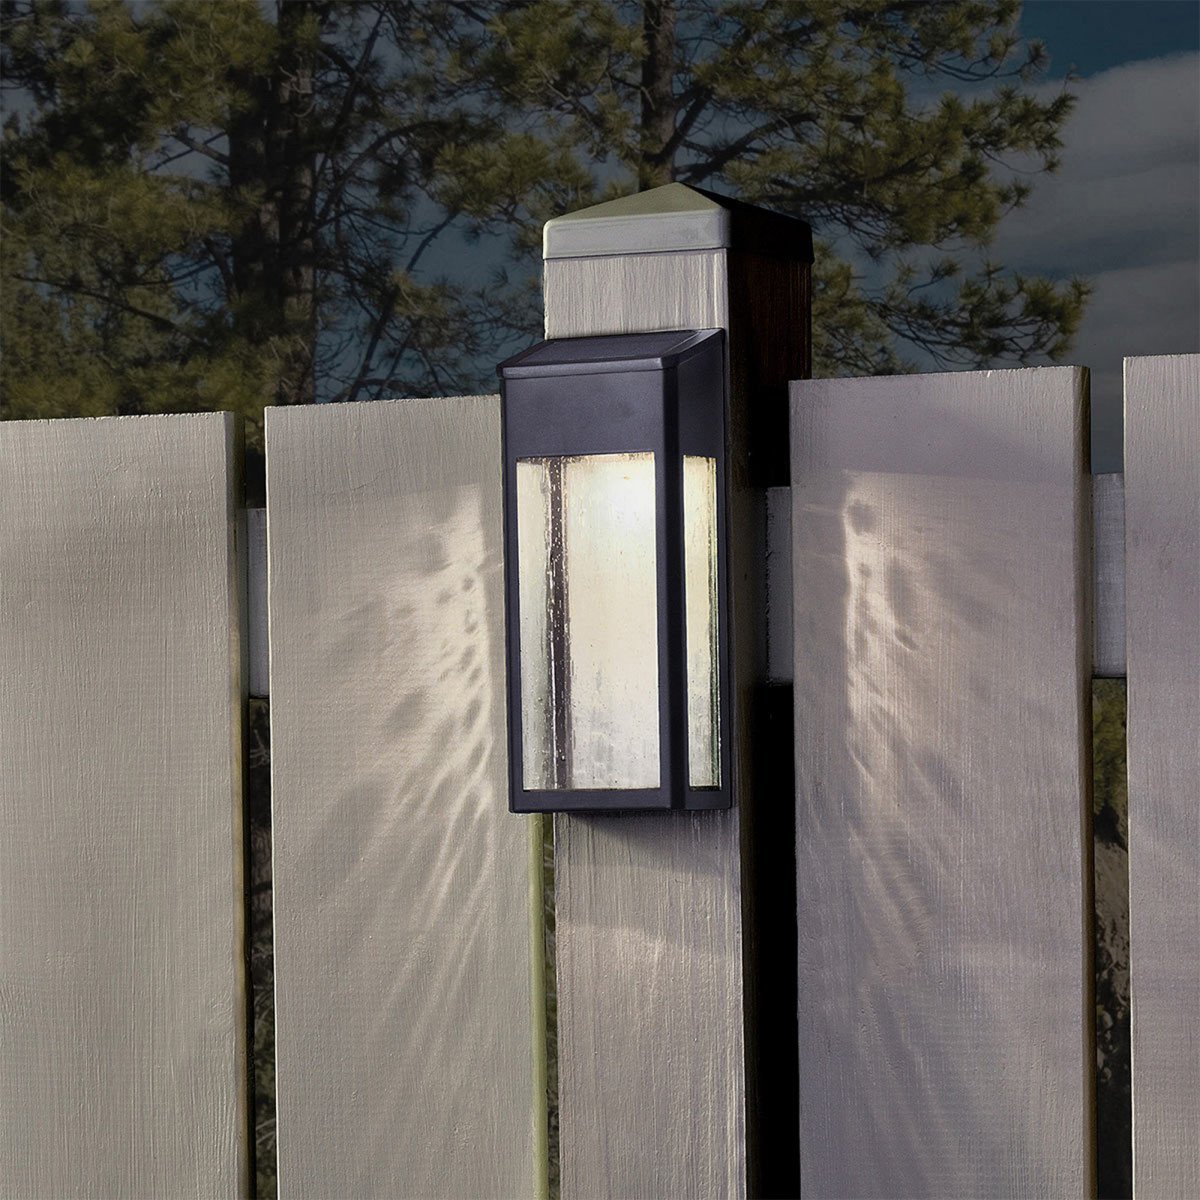 LED solar wandlamp, buitenverlichting zonder bedrading, werkt op zonlicht, wandlamp op zonne-energie, kleur zwart, merk KS Verlichting, duurzame tuinverlichting